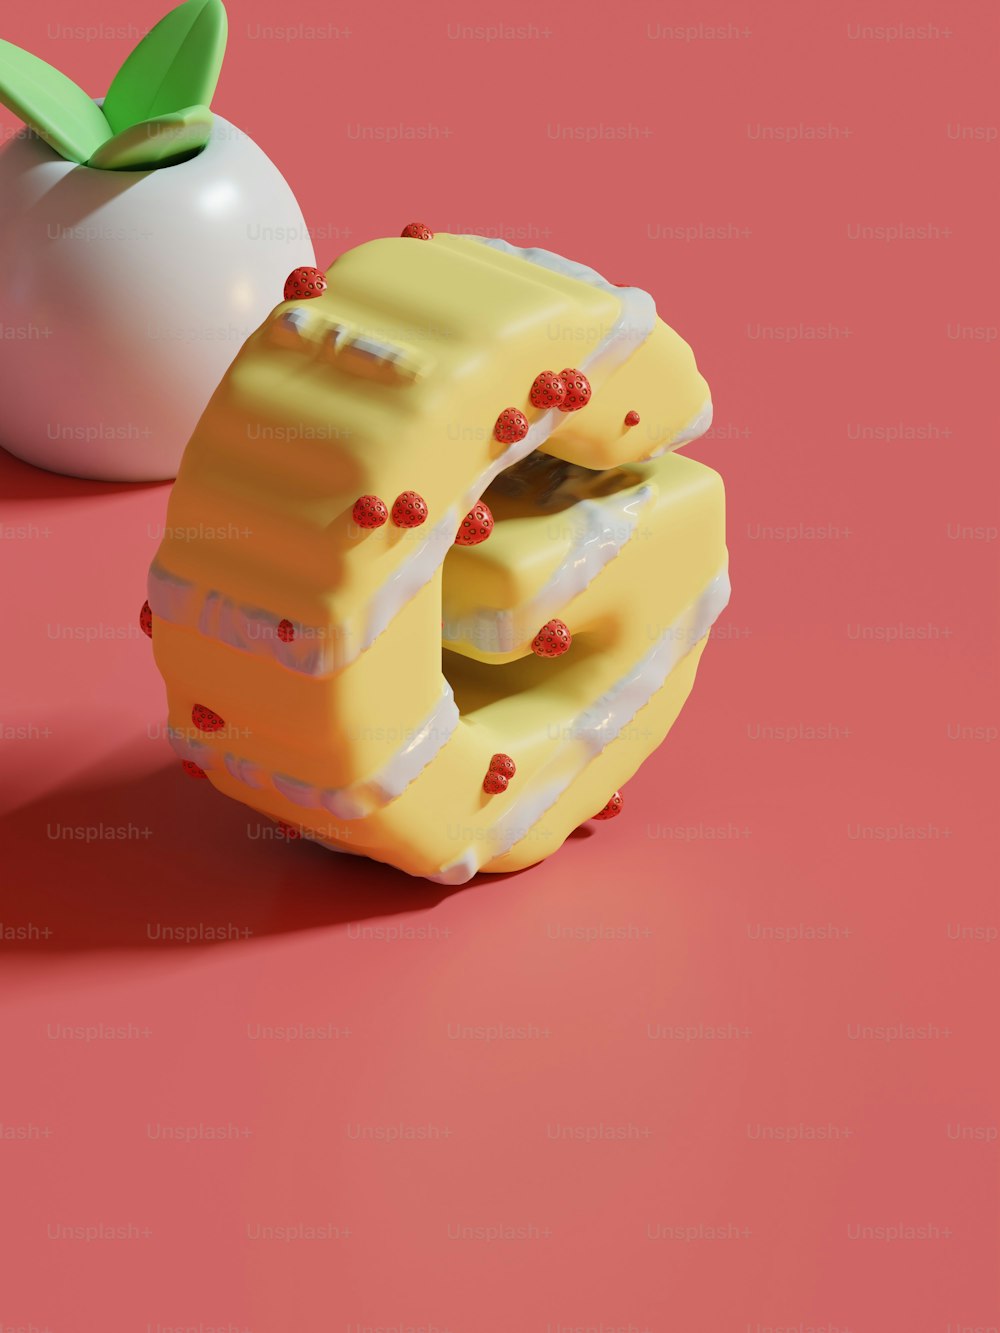 Ein Stück Kuchen neben einem Apfel auf einer rosa Oberfläche